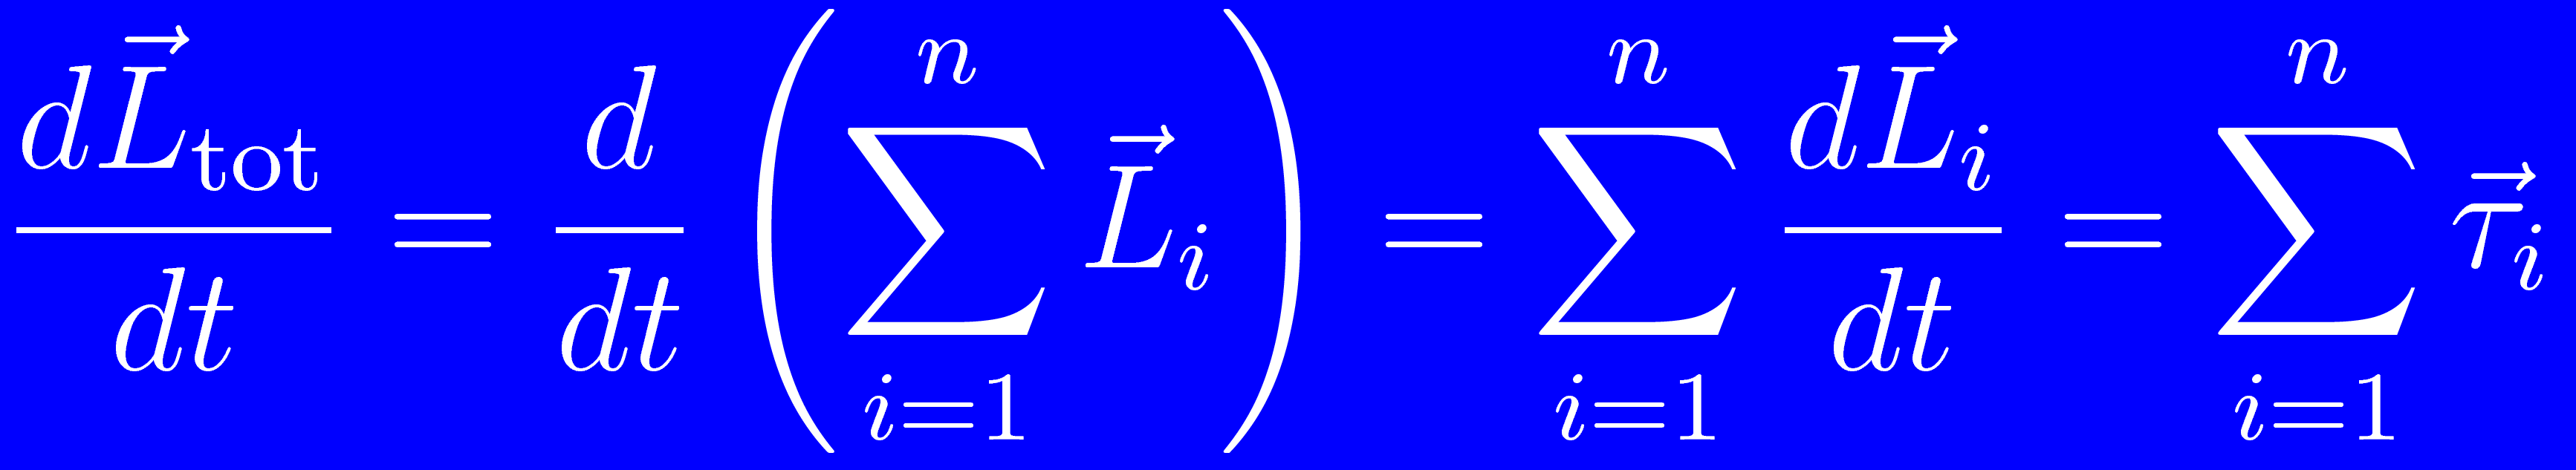 omento angular total de un sistema de partículas A priori, para cada partícula i tendríamos que calcular el torque asociado con: